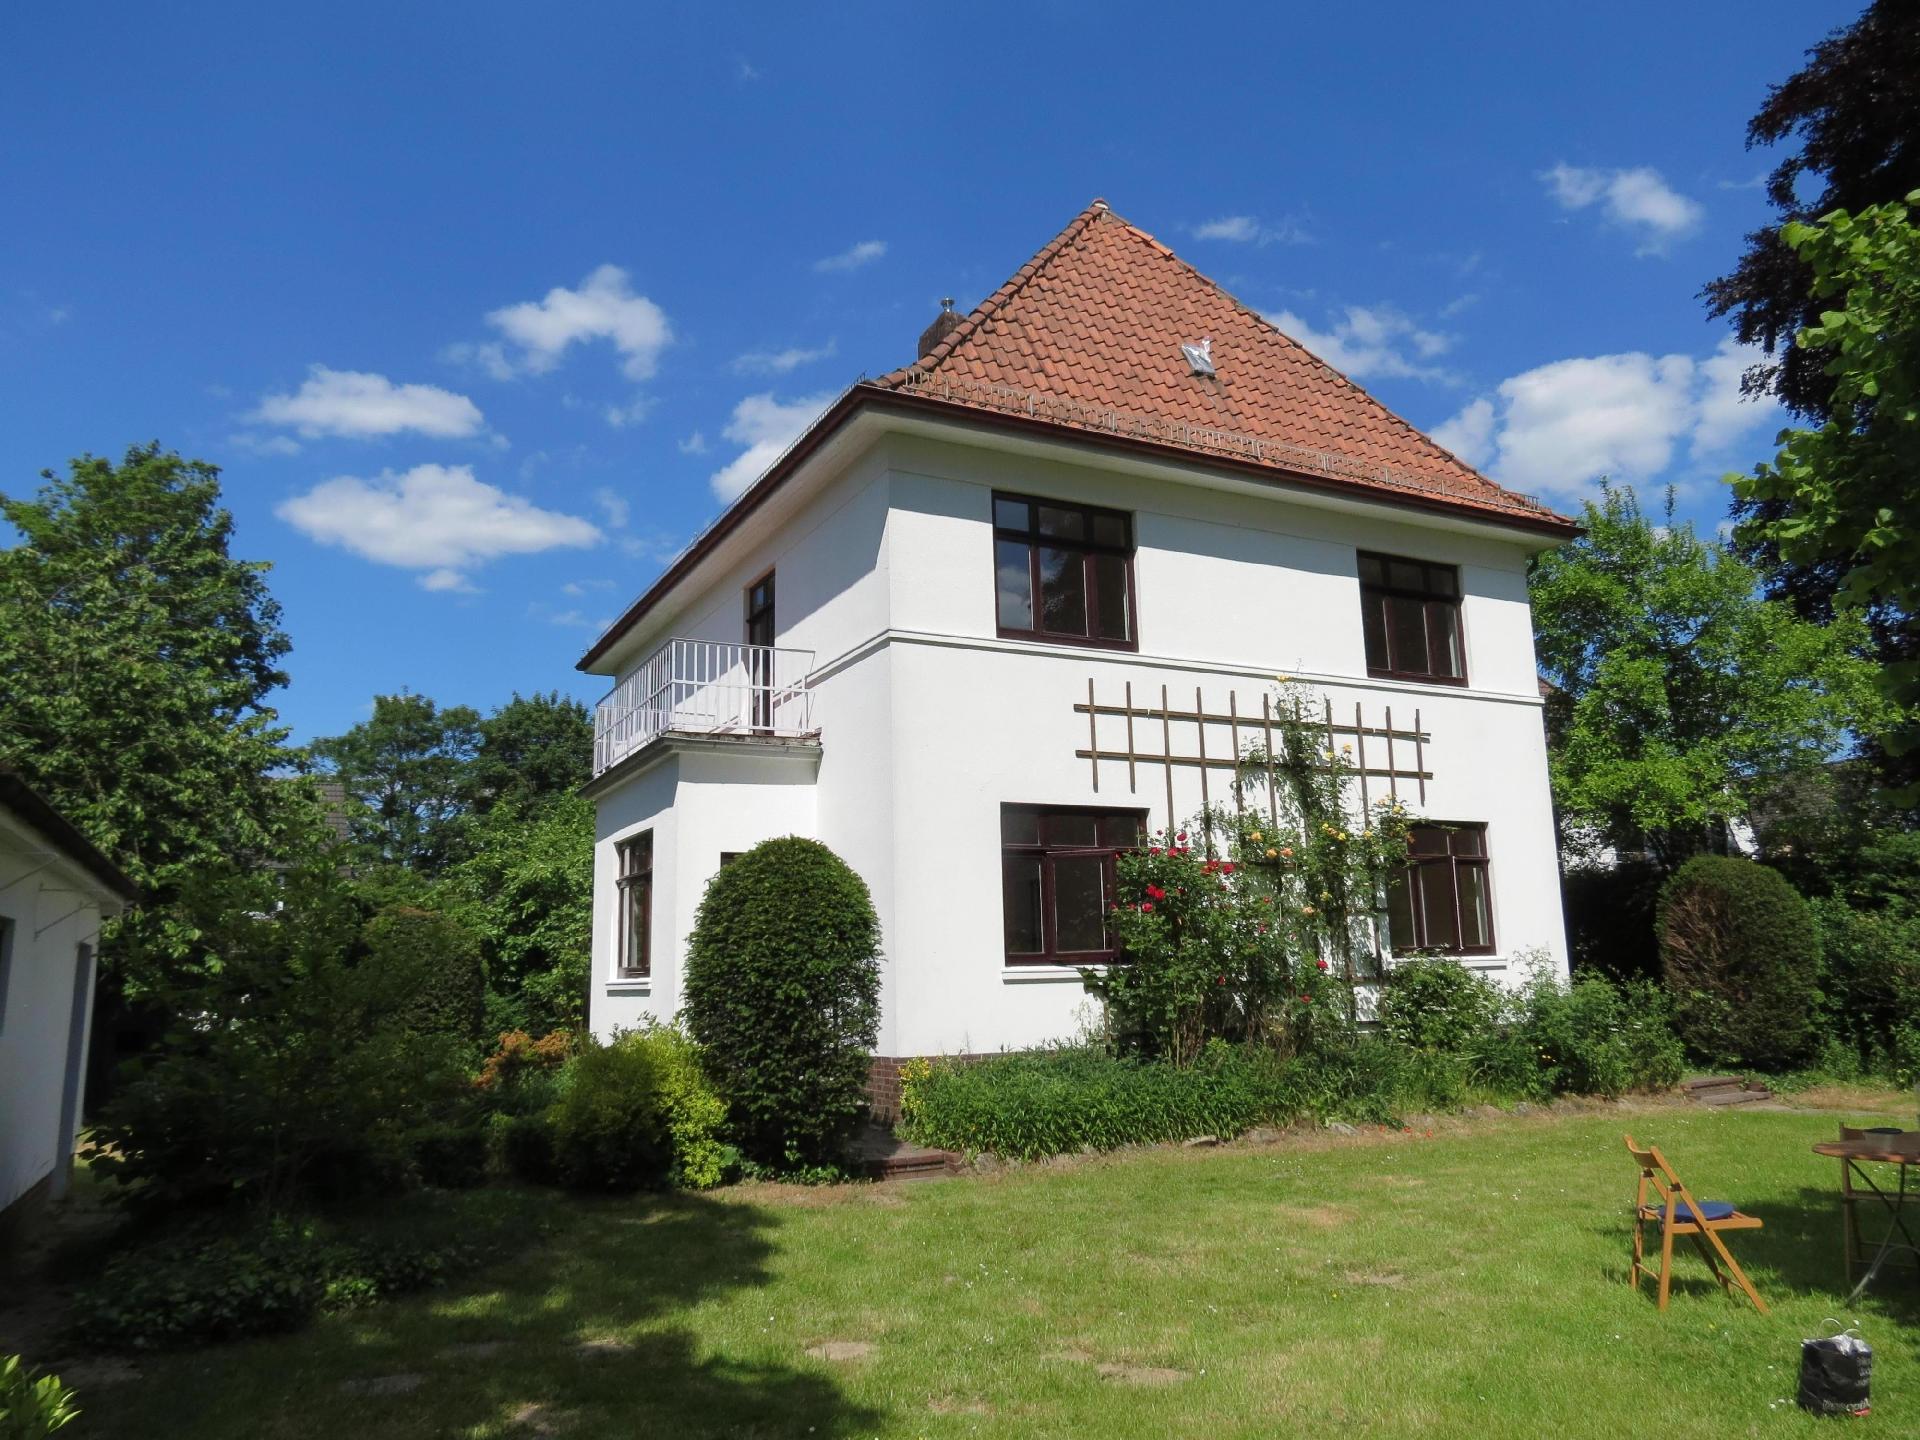 Haus der Wohnstile , Ferienhaus in Bremen-Lesum   